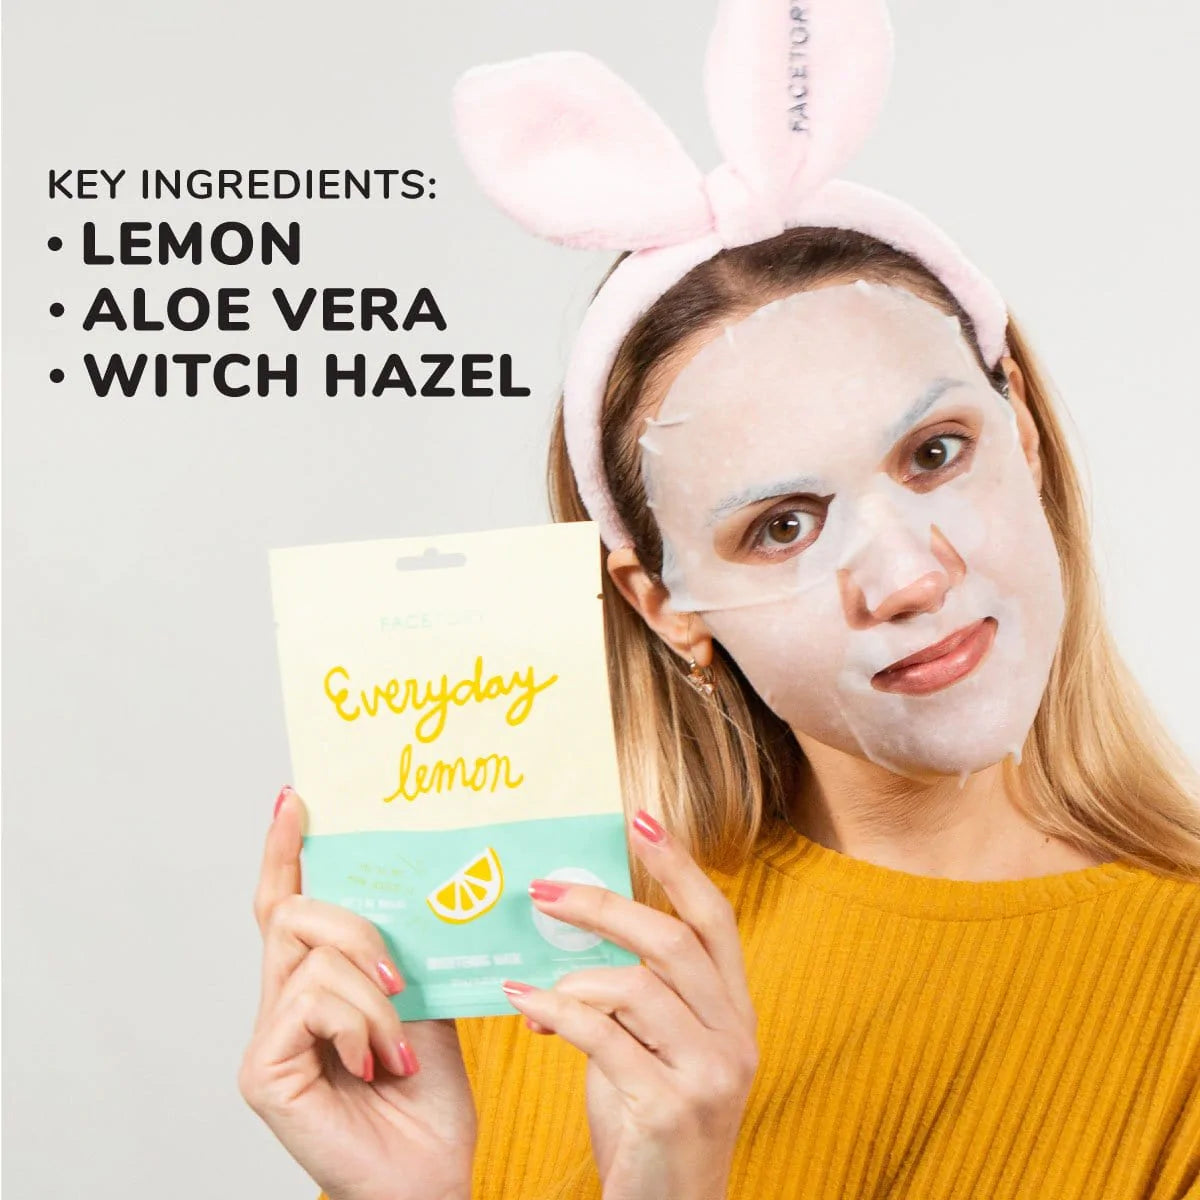 Everyday Lemon Mask - nomadgirlbeauty